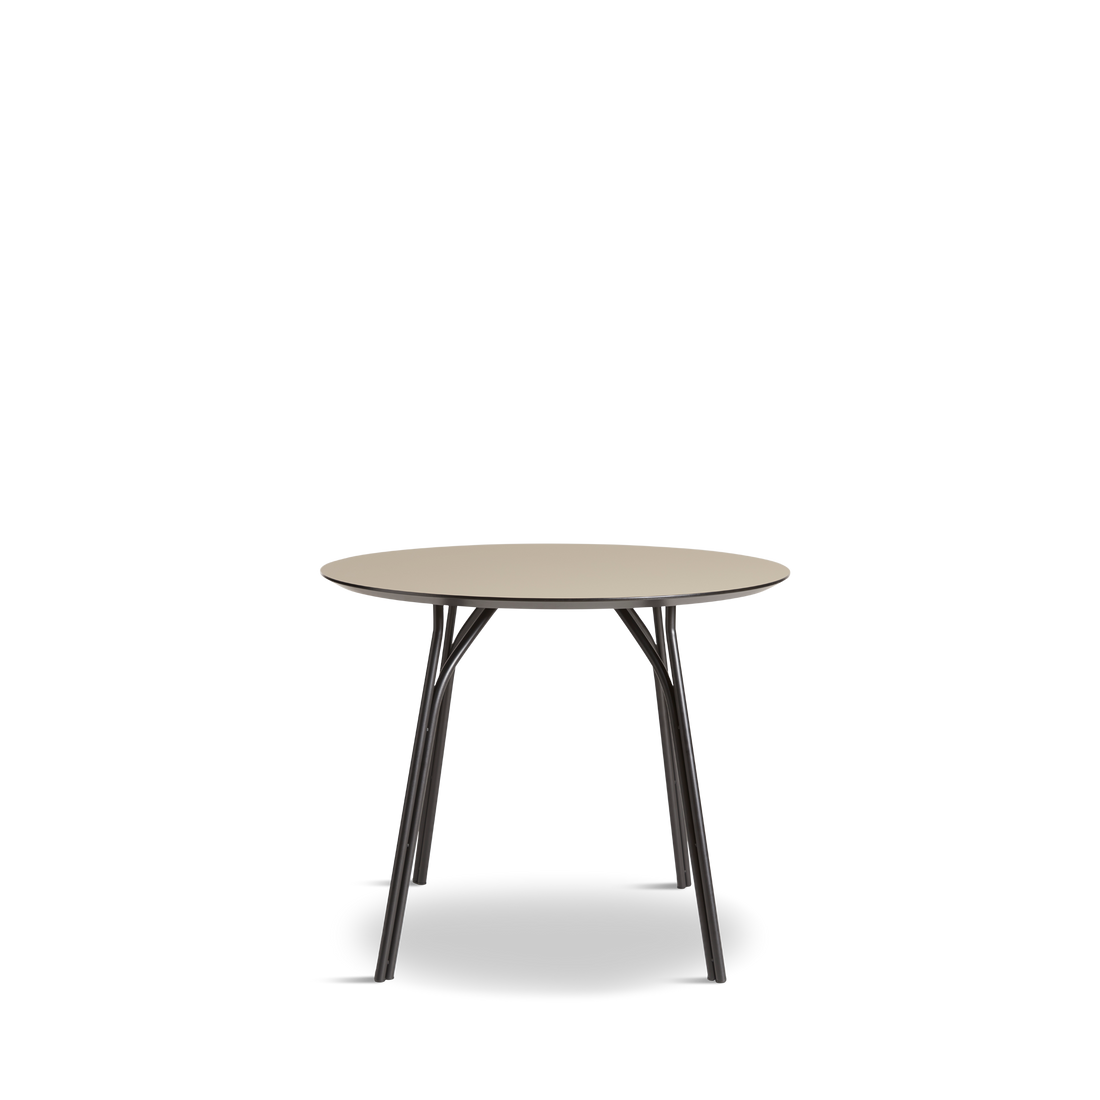 WOUD -  Tree dining table (90 cm) - Beige/black